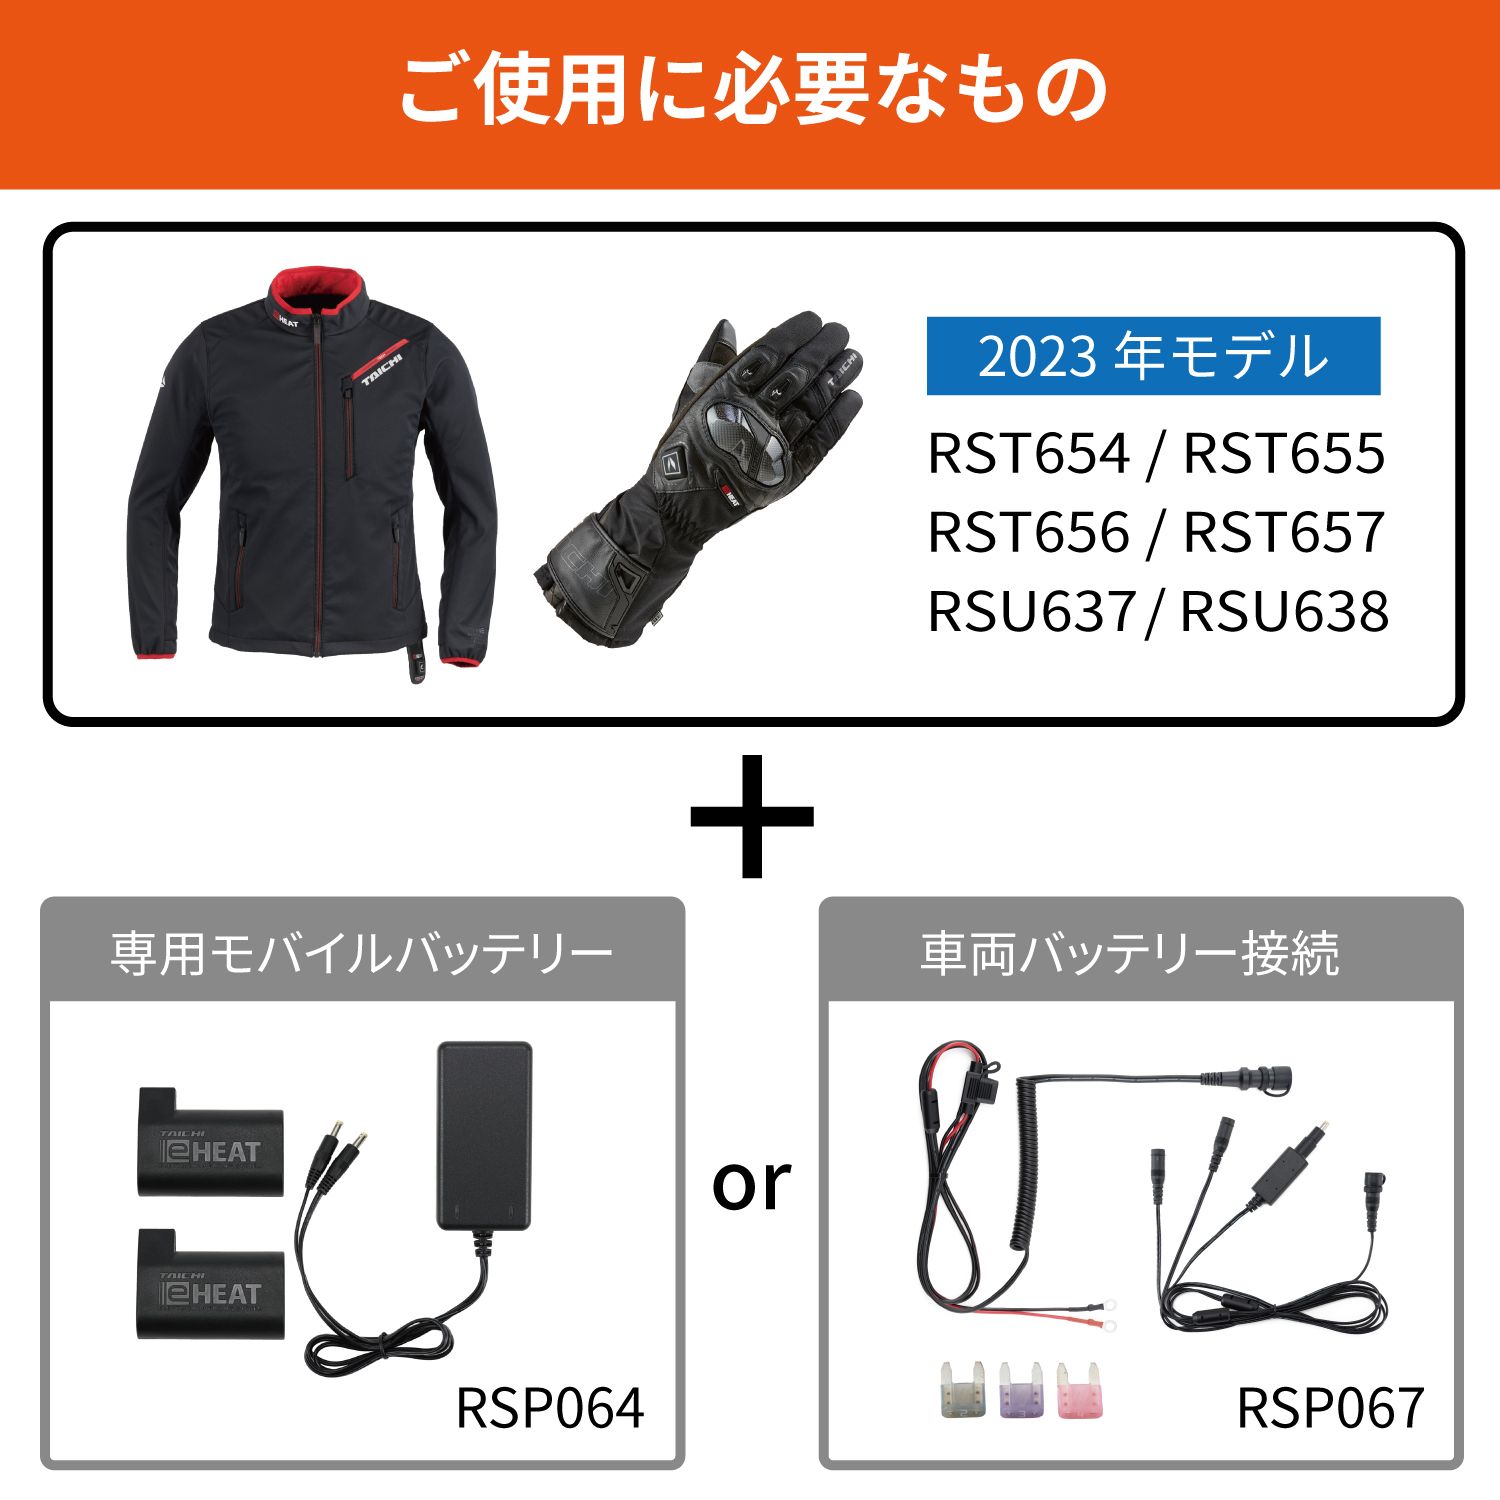 【タイチ公式通販】RSP064 | e-HEAT 7.2V充電器&バッテリー 